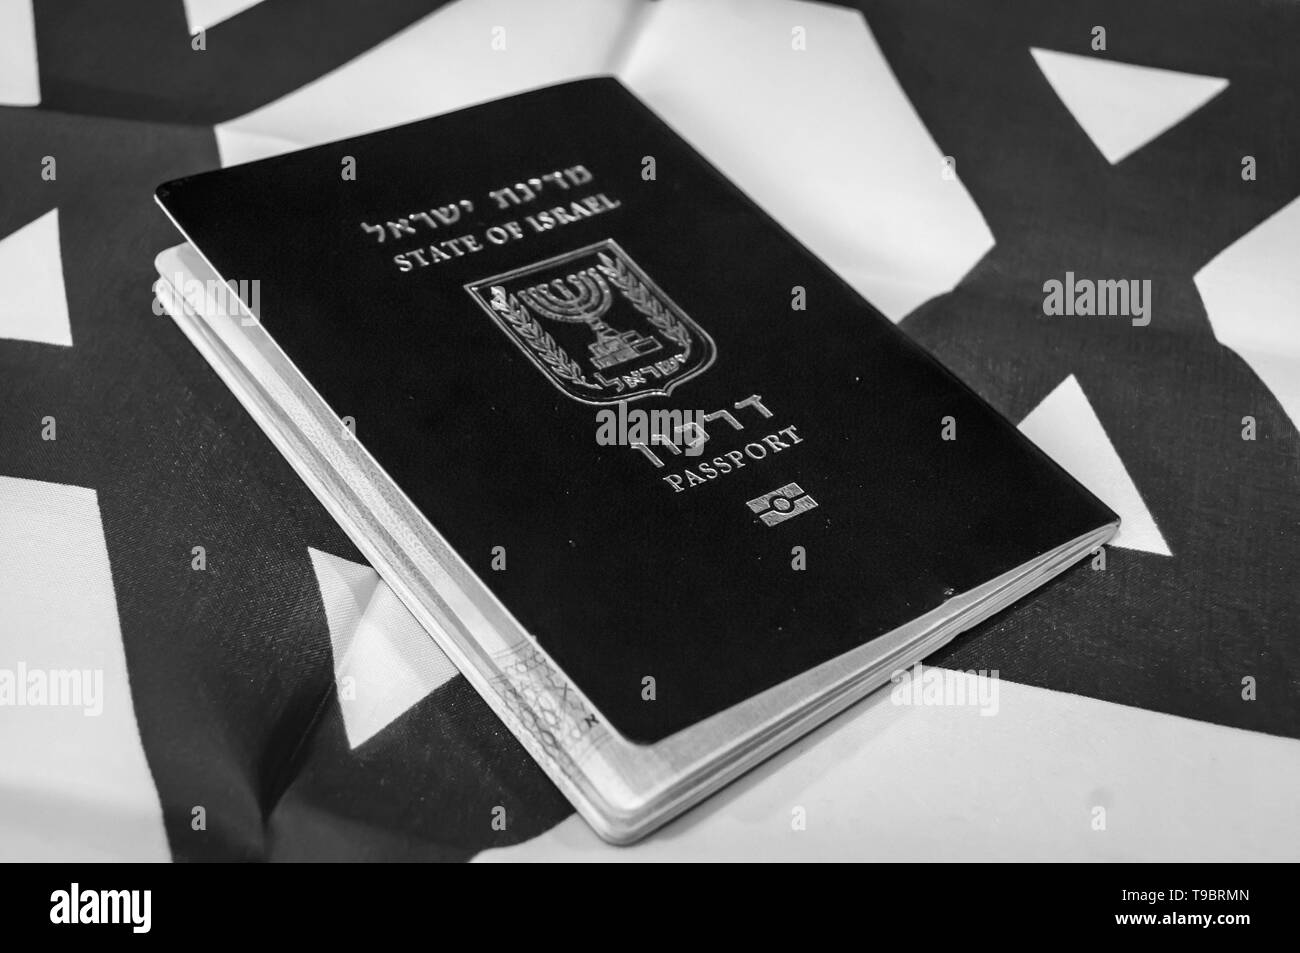 Un pasaporte azul del Estado de Israel en la bandera israelí en el fondo. El concepto de ciudadanía de Israel, Israel "biométrica" arkon ilustrativa de pasaporte Foto de stock